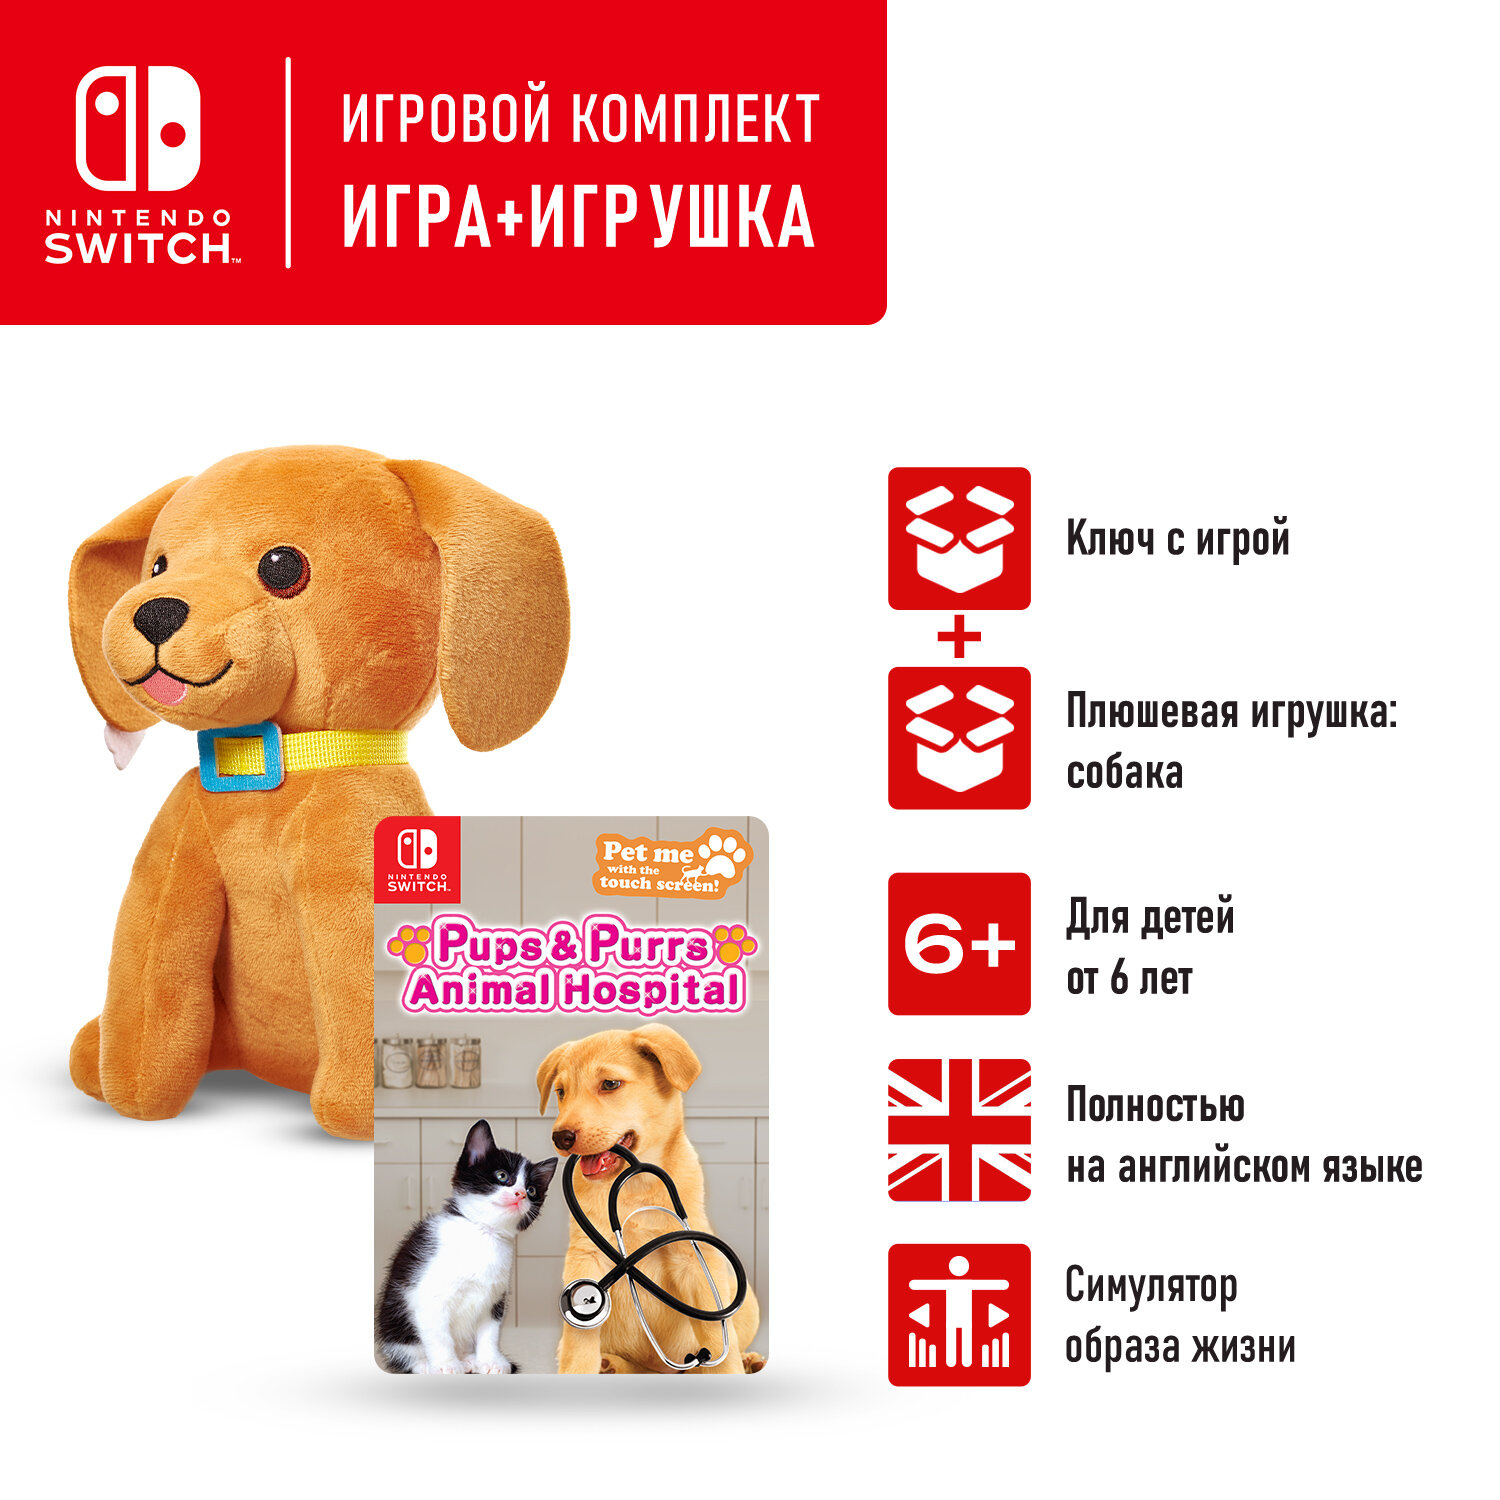 Игровой бандл Nintendo Switch: Pups & Purrs Animal Hospital игра Nintendo Switch (цифровой ключ) + мягкая игрушка